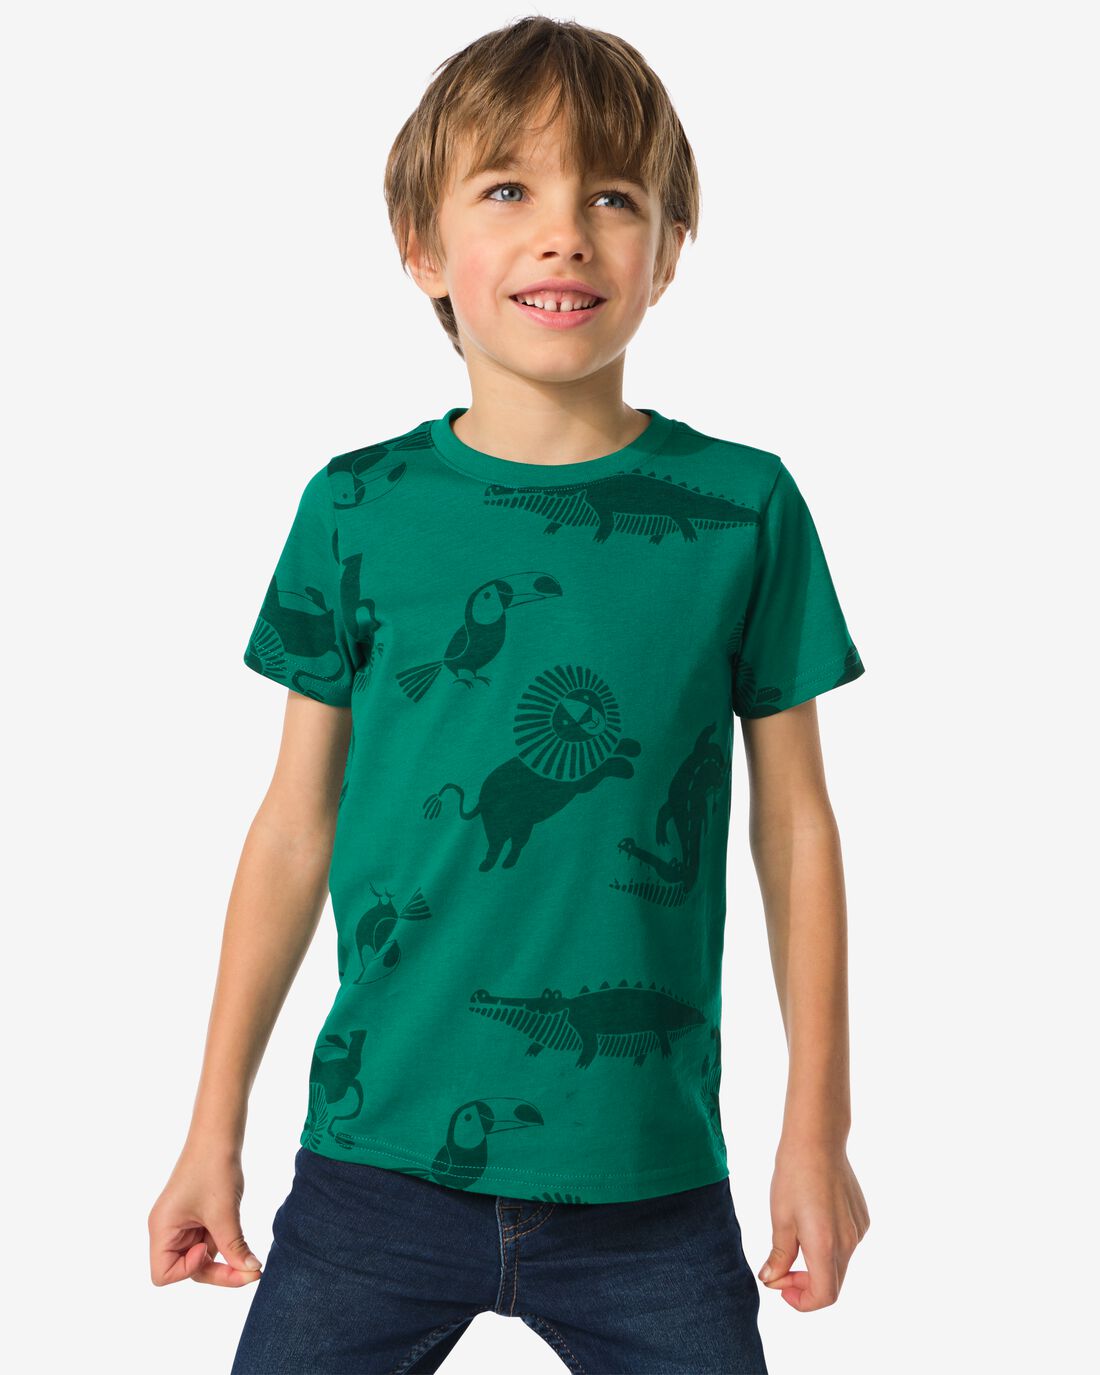 HEMA Kinder T-shirts Dieren 2 Stuks Groen (groen)